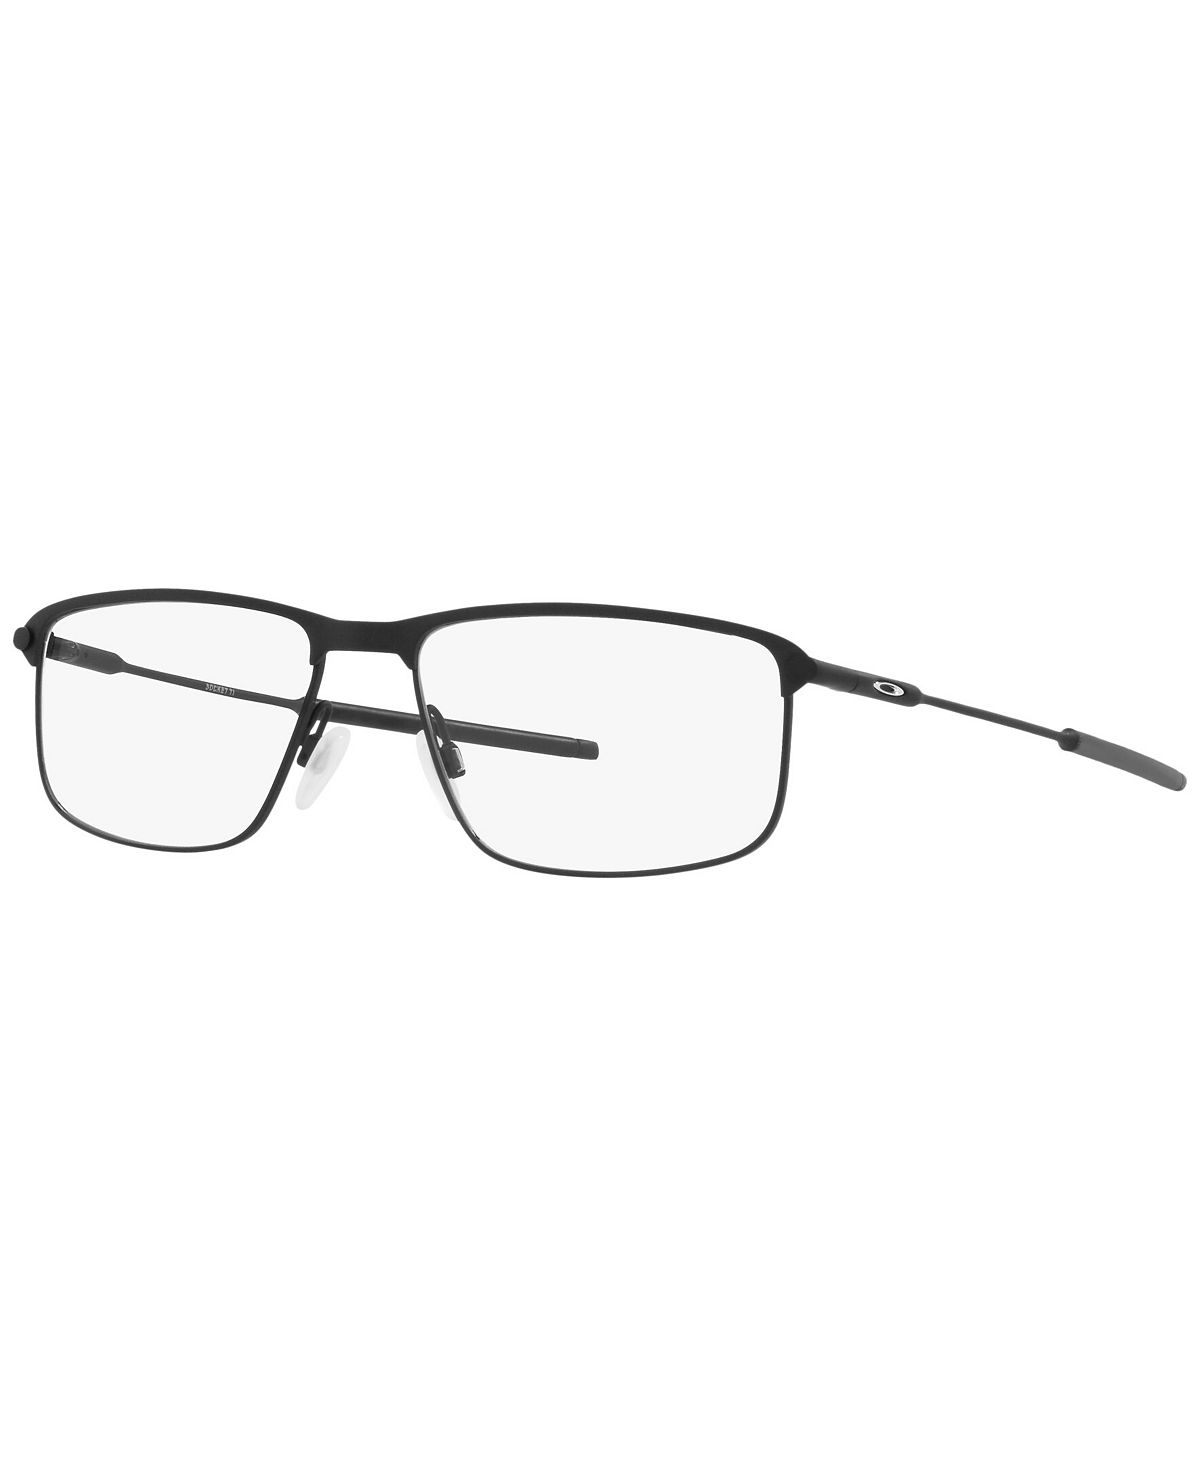 Мужские прямоугольные очки OX5019 Socket TI Oakley